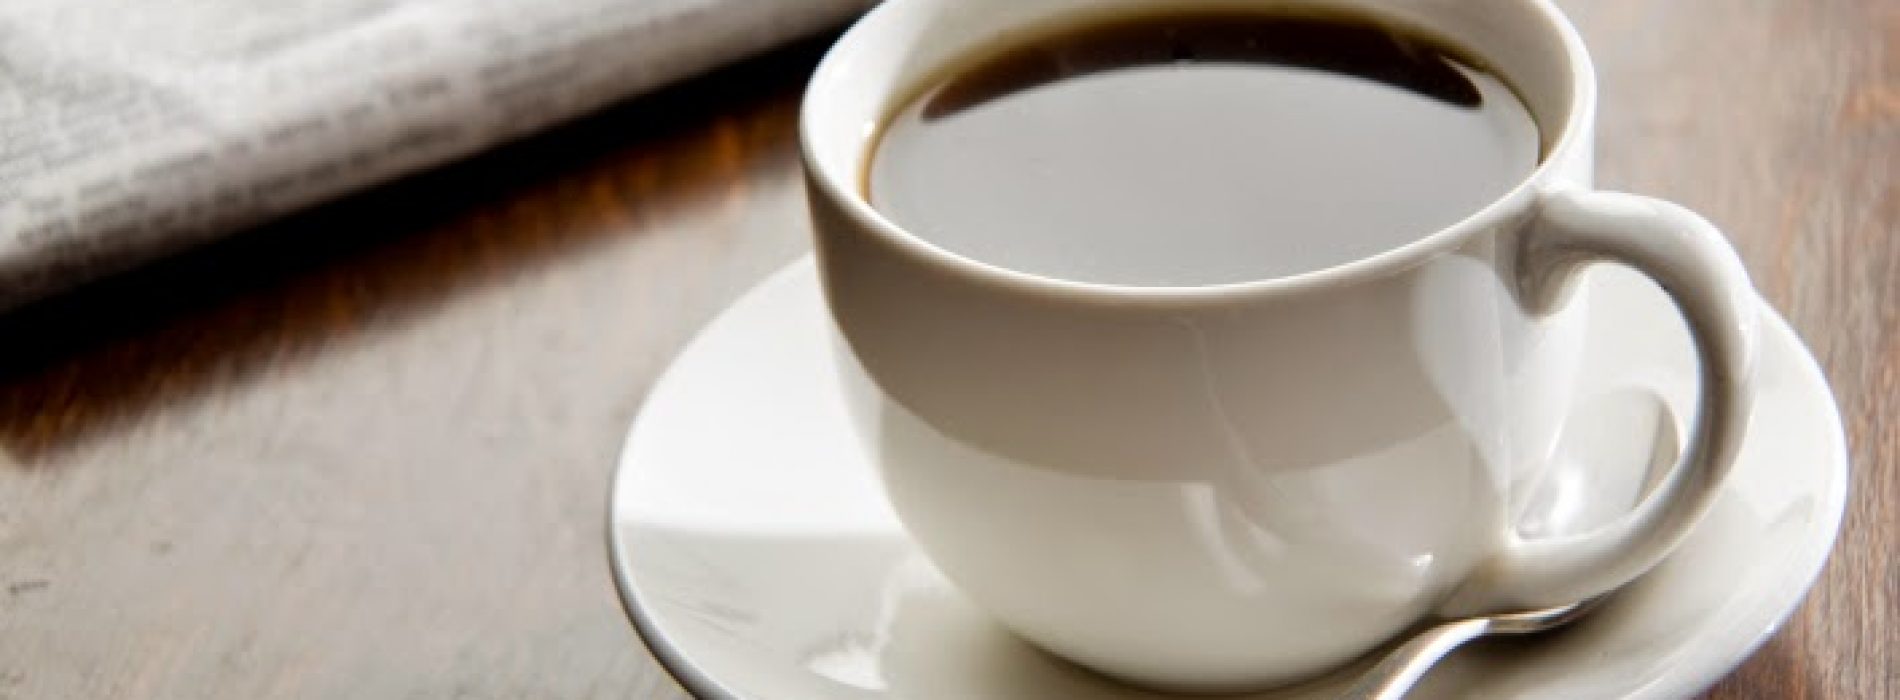 Koffie geassocieerd met verbeterde overleving bij patiënten met colorectale kanker